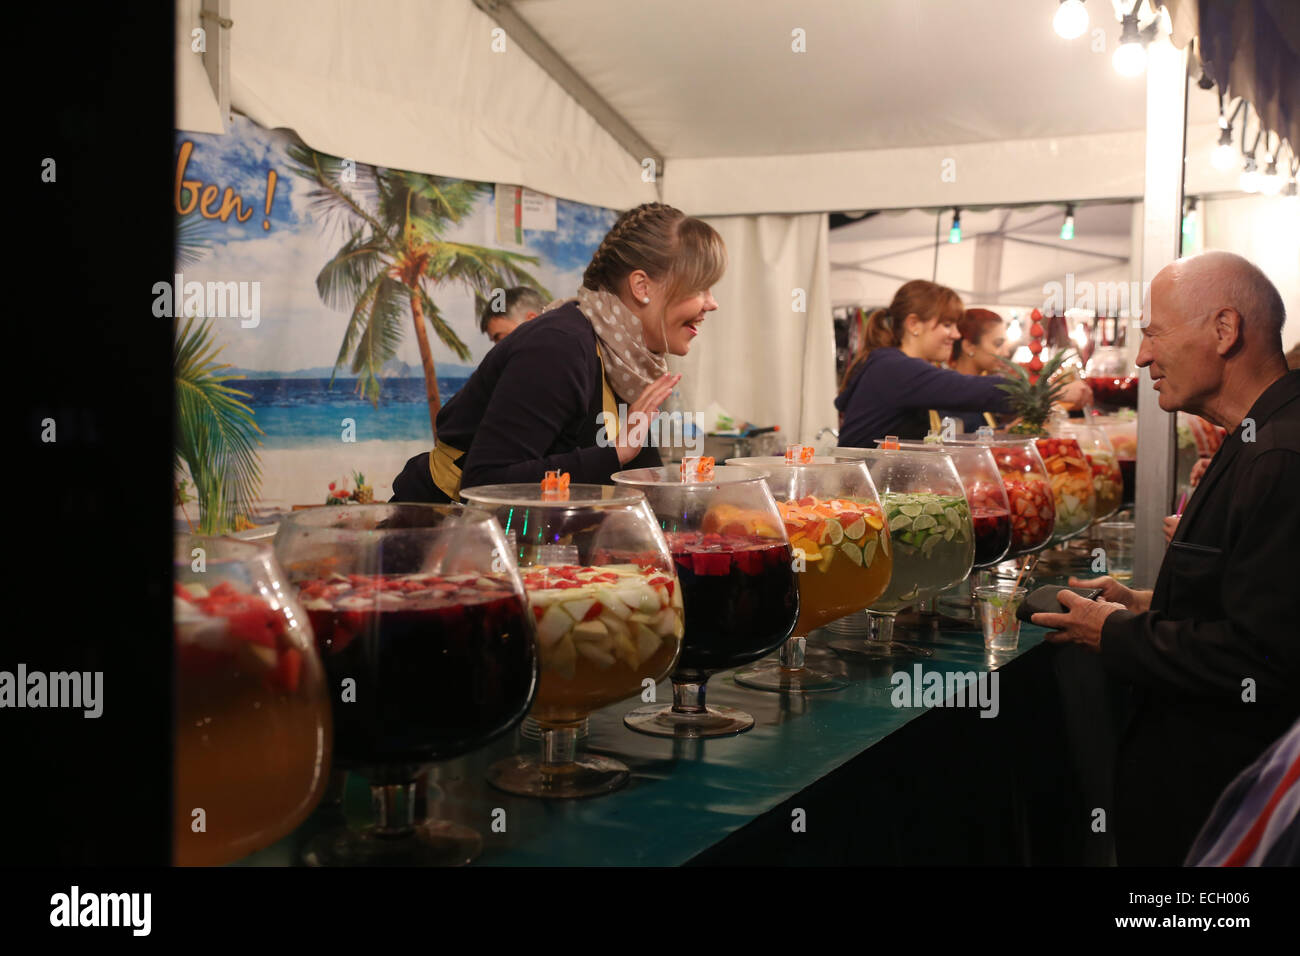 Berlin street venditore a vendere punch alla frutta festival all'aperto l'unità tedesca giorno 3 ott. notte Foto Stock